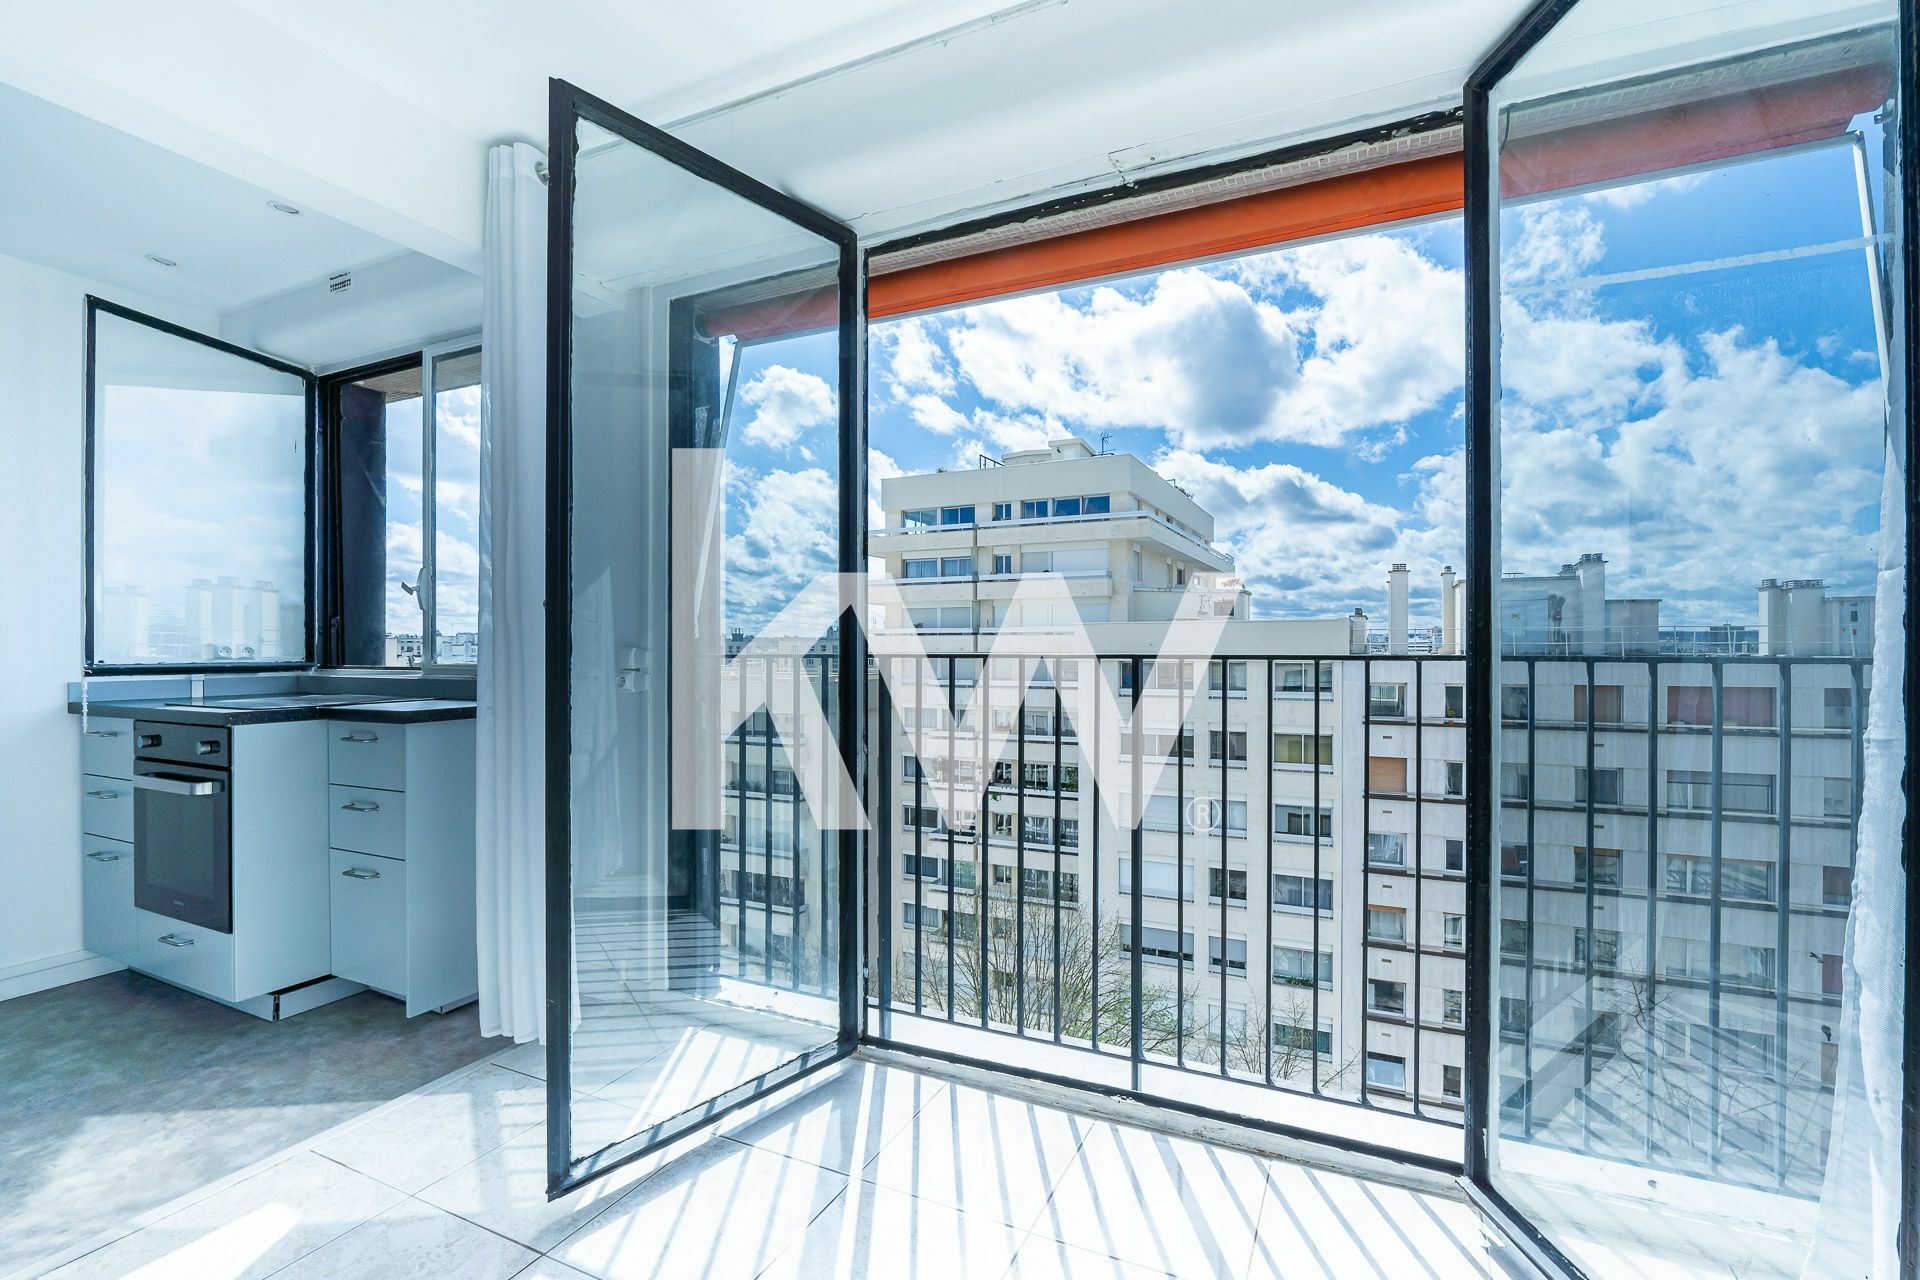 VENTE d'un appartement F3 (56 m²) dans le 14e arrondissement de Paris (9/11)